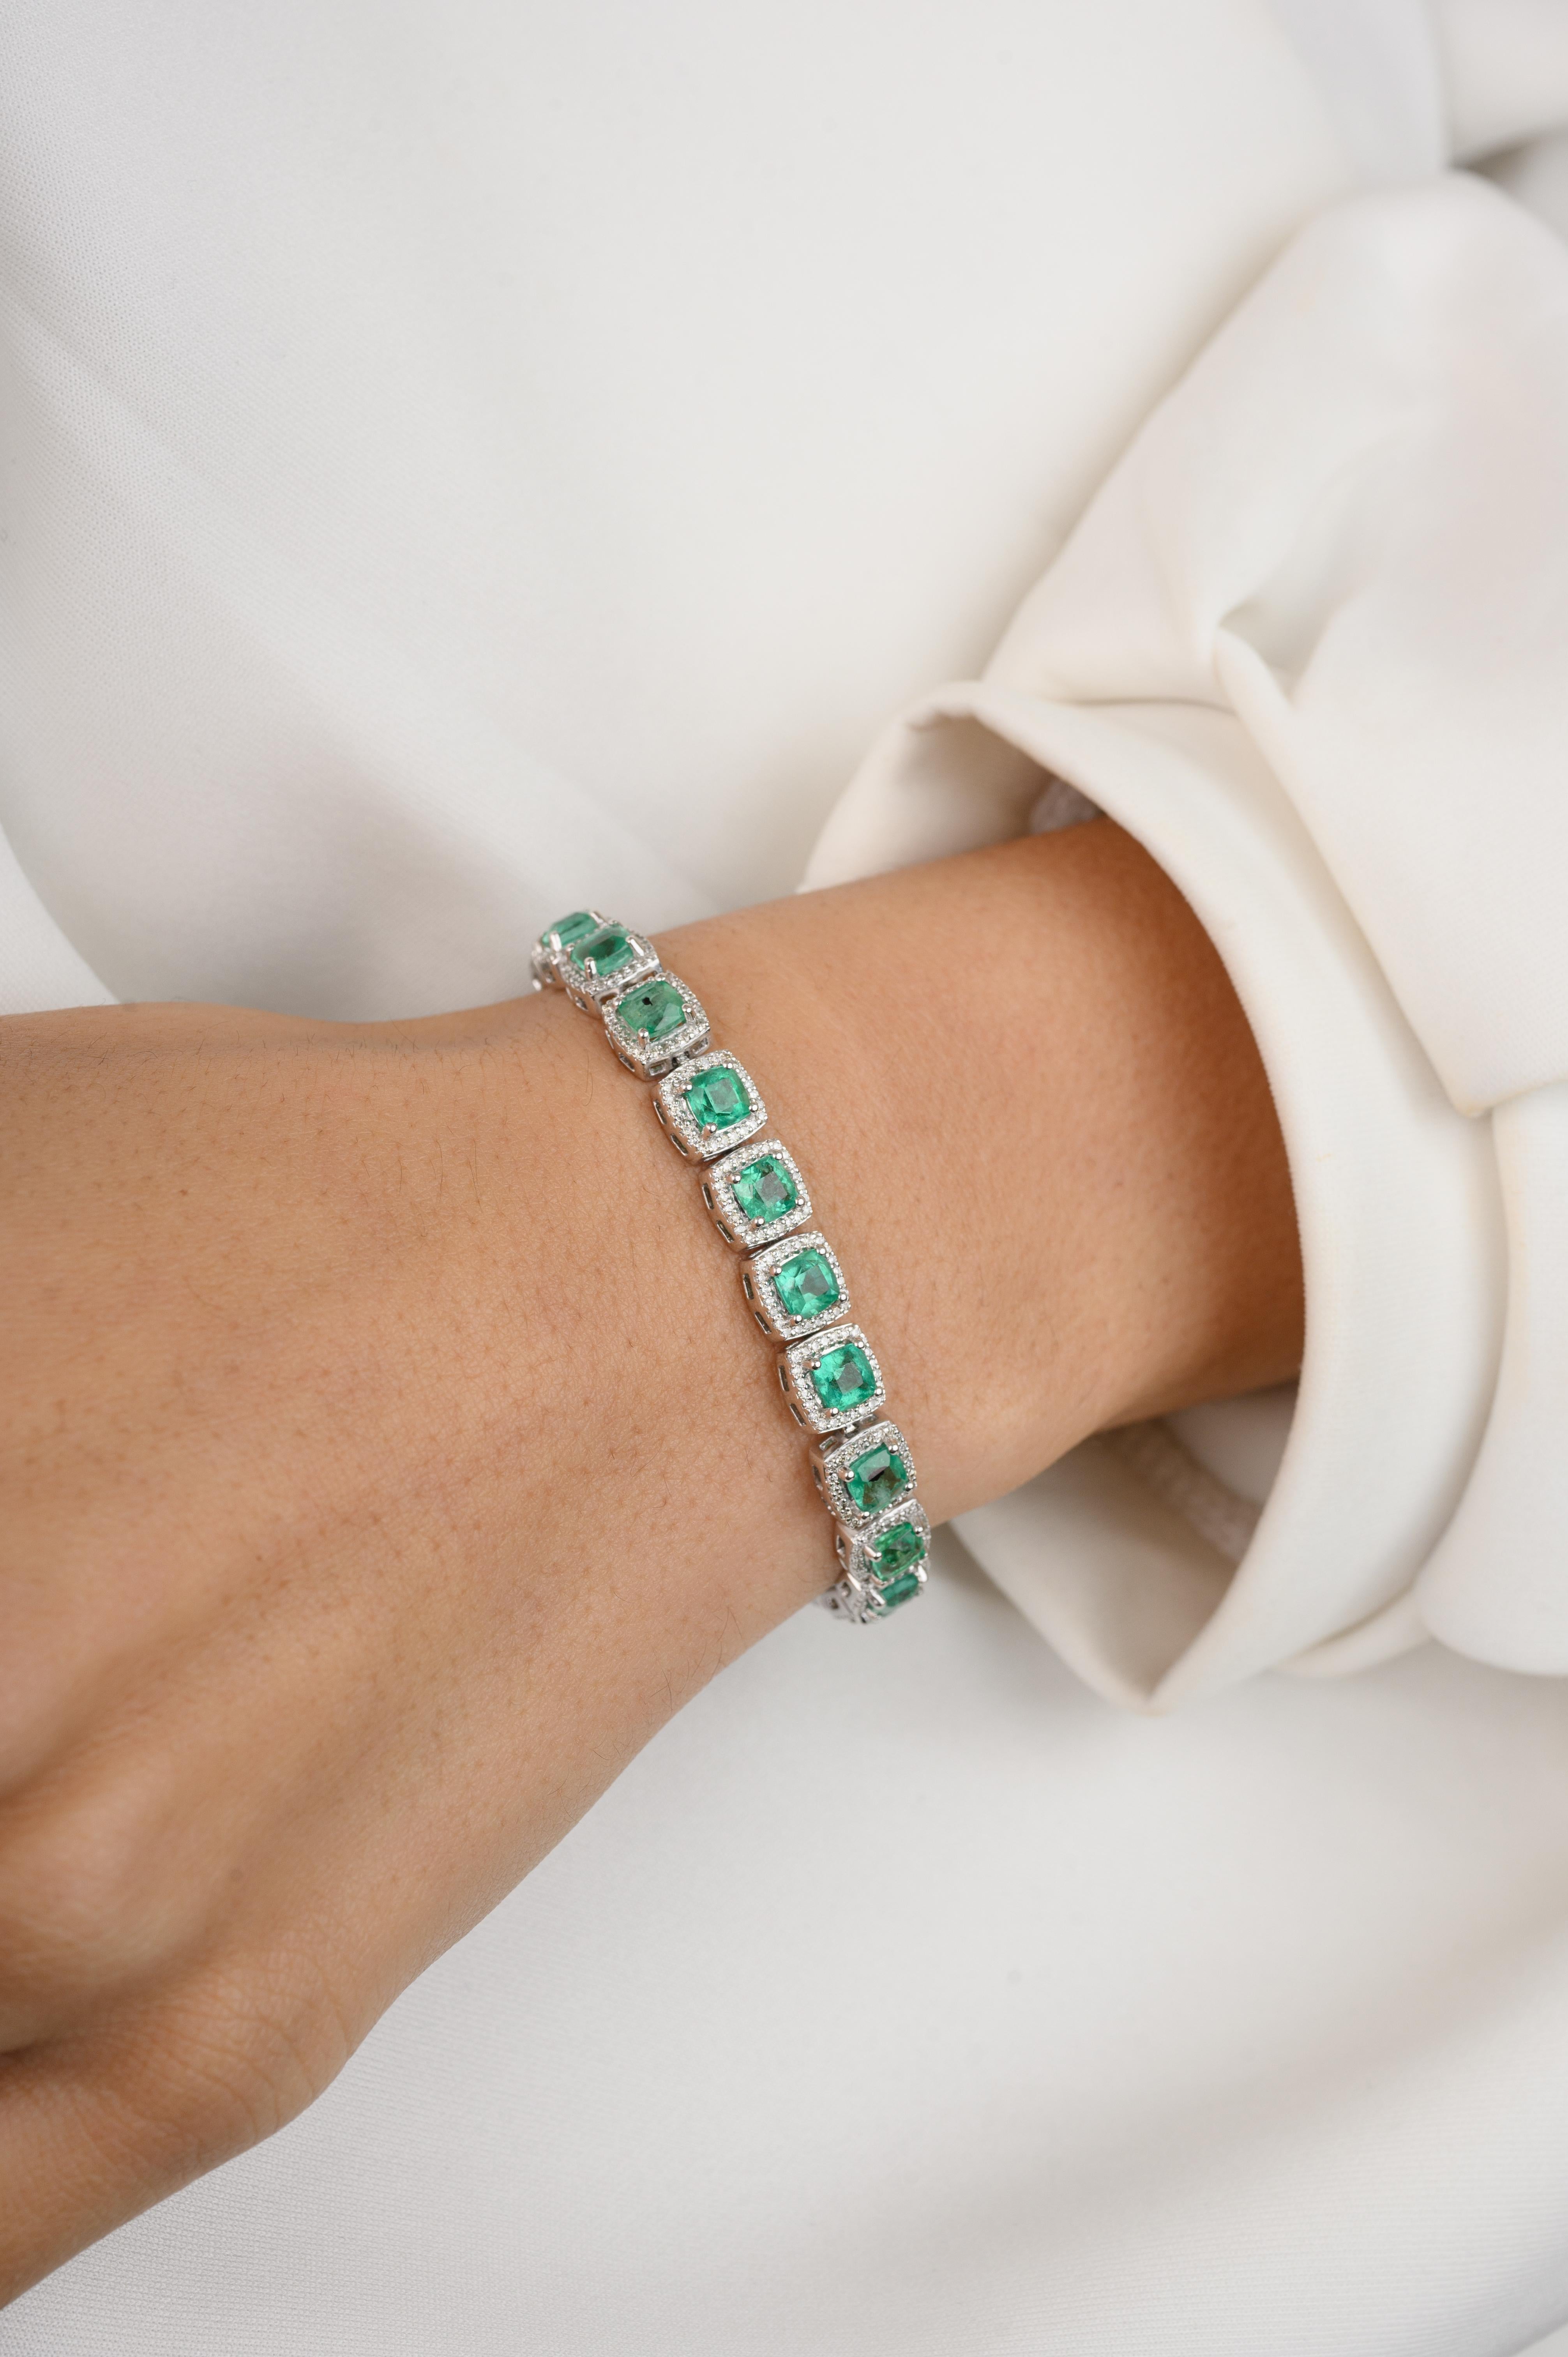 Ce bracelet de fiançailles Emerald Diamond Halo en or 18 carats met en valeur une émeraude naturelle à l'éclat infini, pesant 10,01 carats, et des diamants pesant 1,61 carats. Il mesure 7 pouces de long. 
L'émeraude renforce les capacités